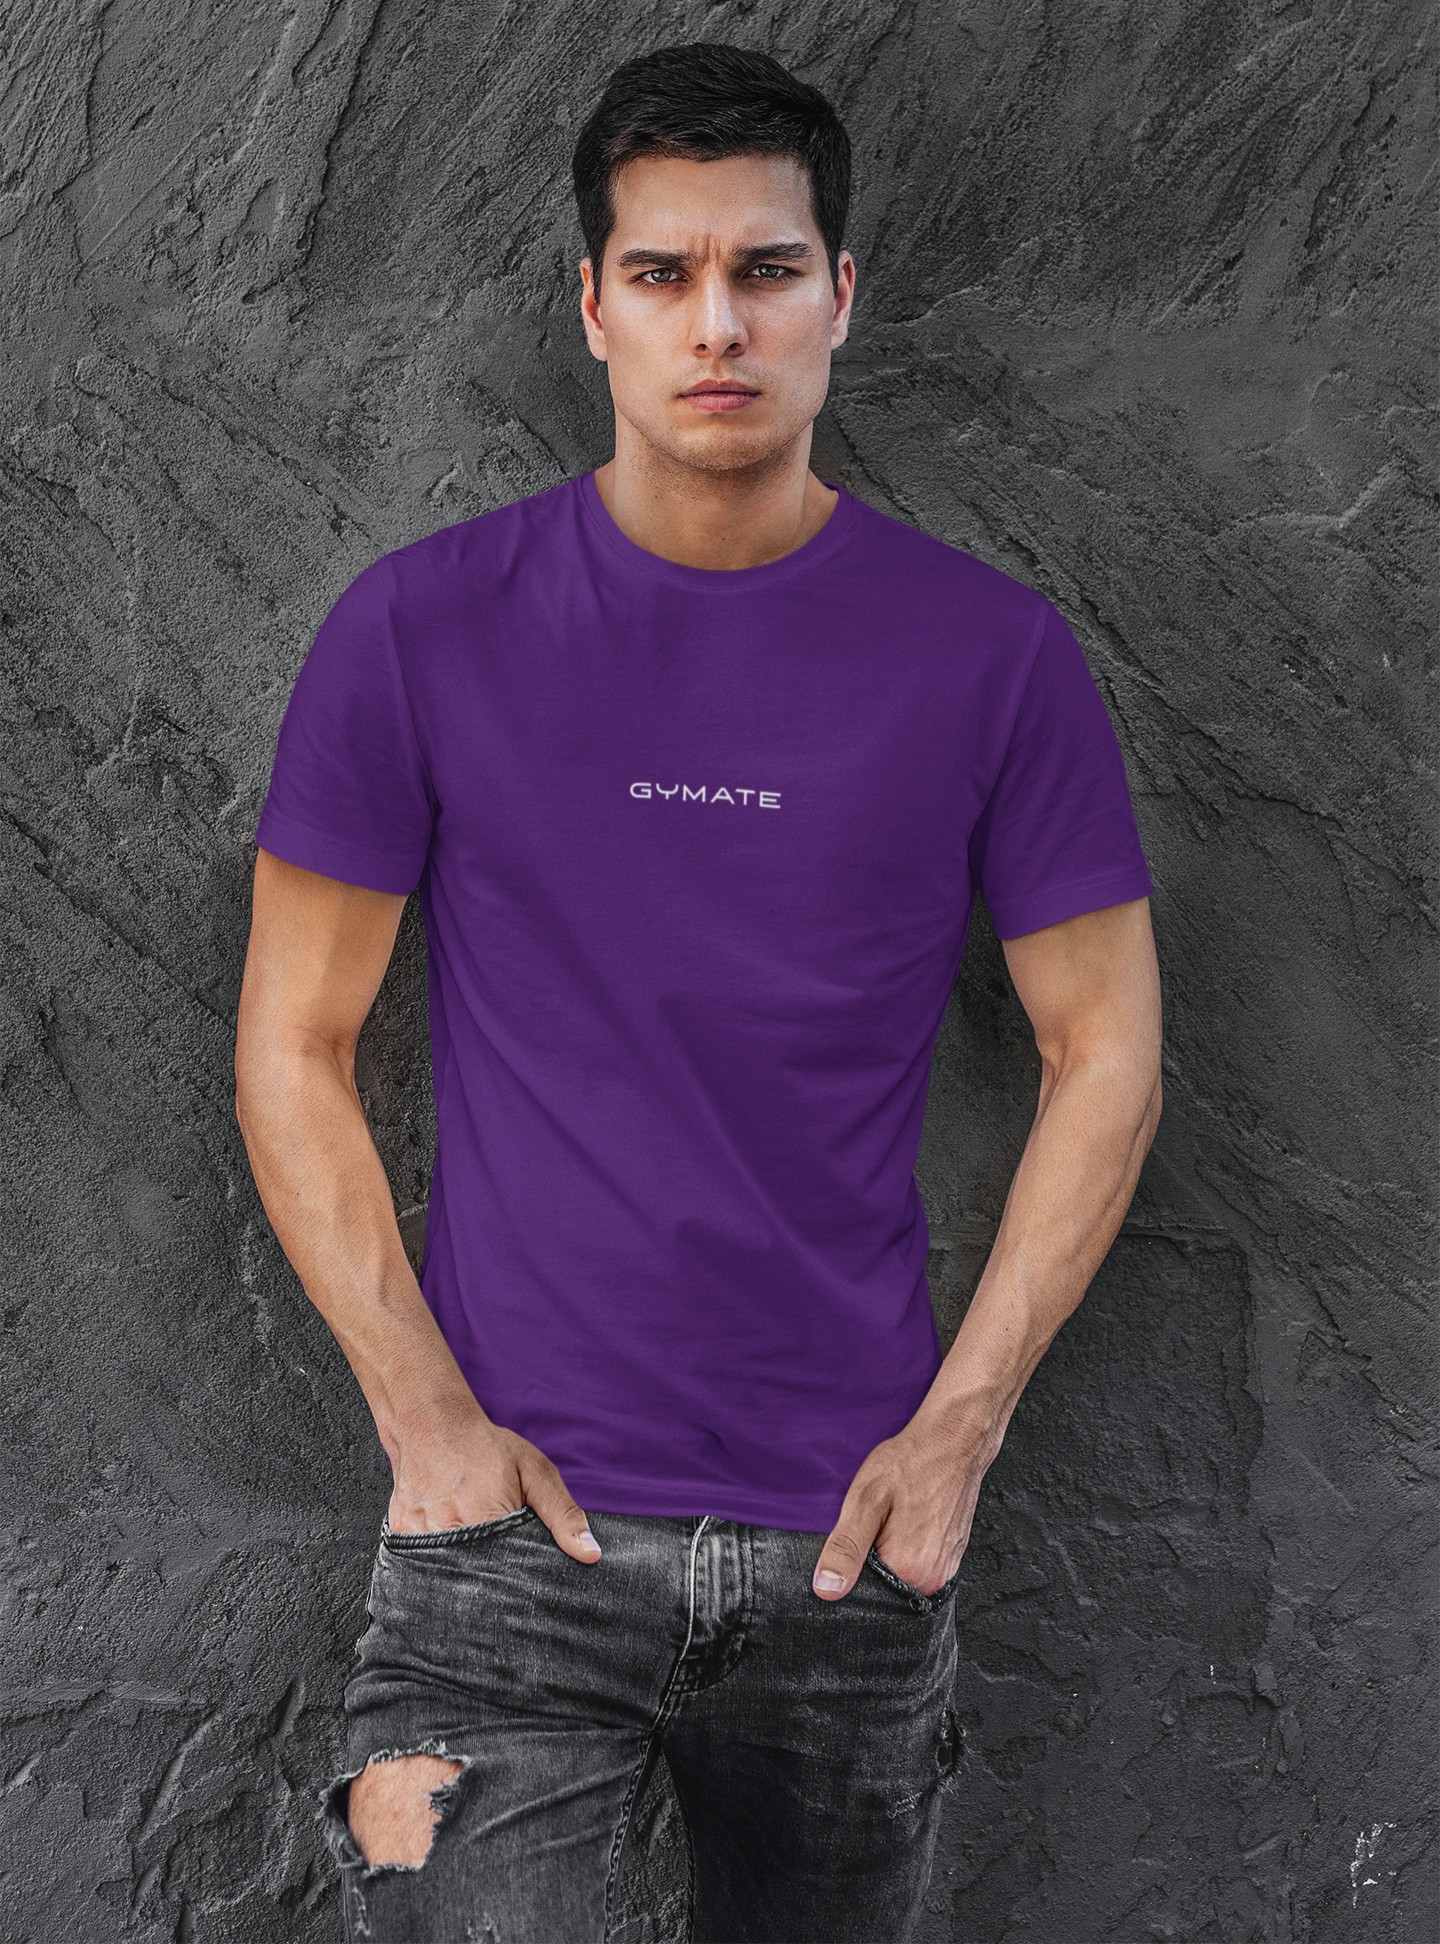 Designer mens T shirts Original Gymate sml/ctr purple